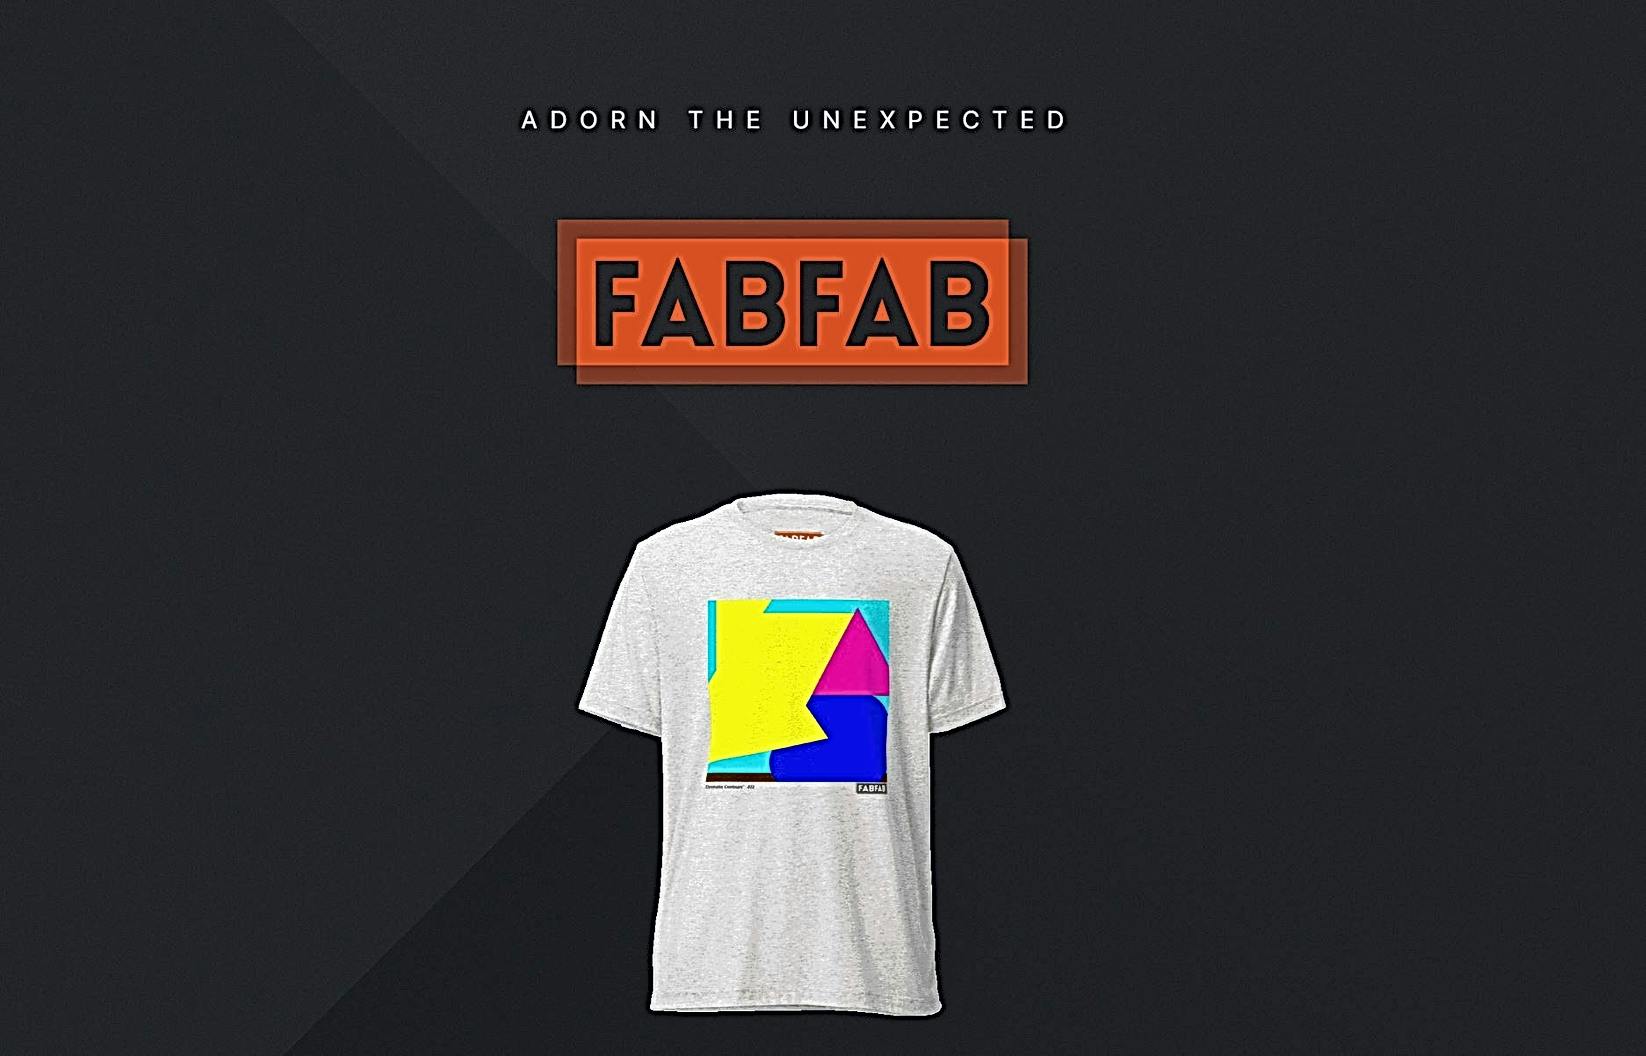 FabFab AI featured